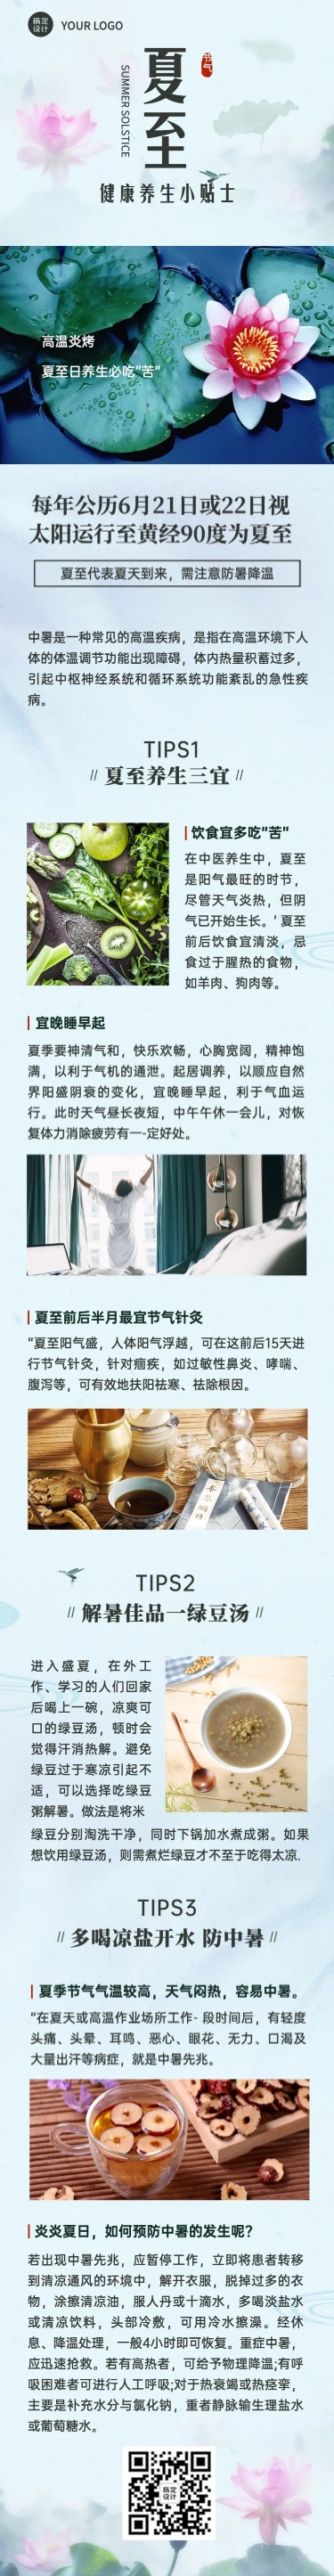 医疗保健节气营销中国风长图